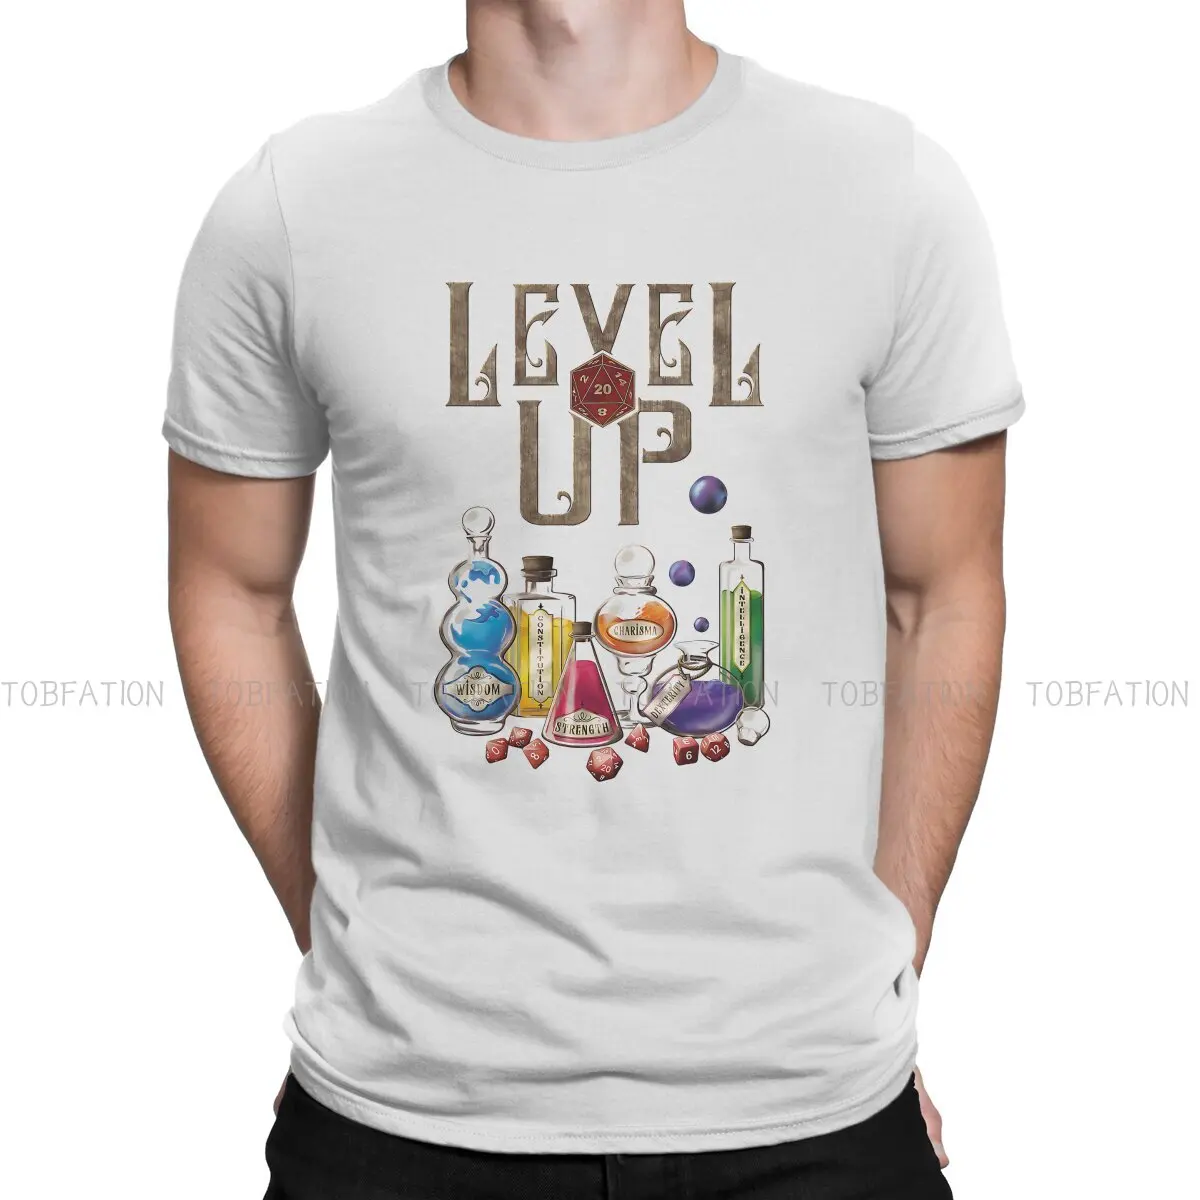 Футболка из 100% хлопка DnD Game, базовая футболка Level Up Essential, мужская футболка с модным принтом